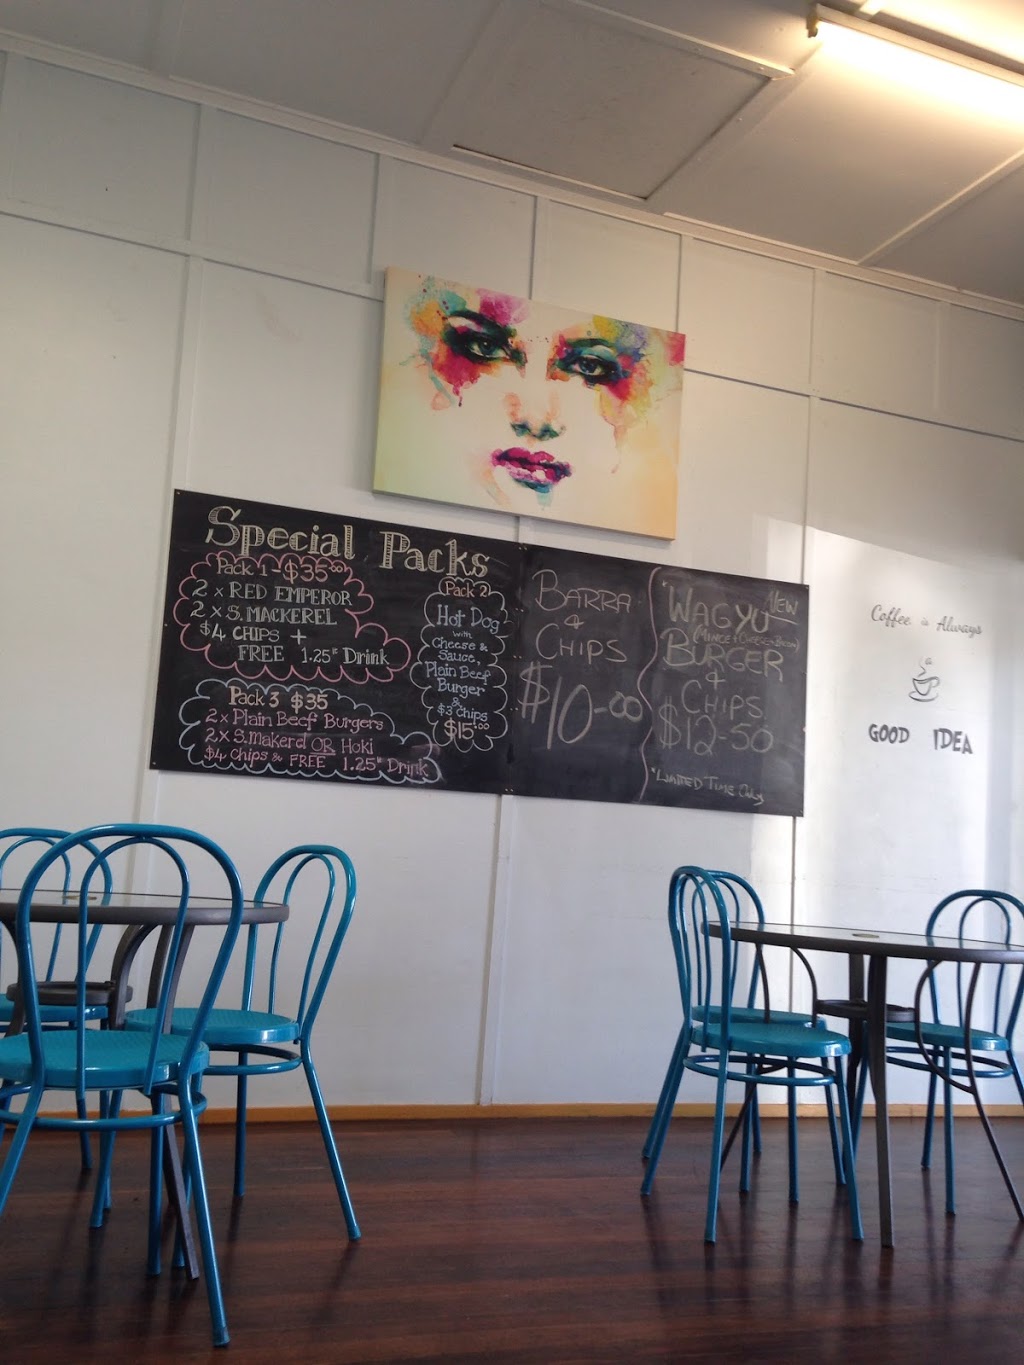 Moonlite Cafe | 65 Morgan St, Mount Morgan QLD 4714, Australia | Phone: 0434 883 784